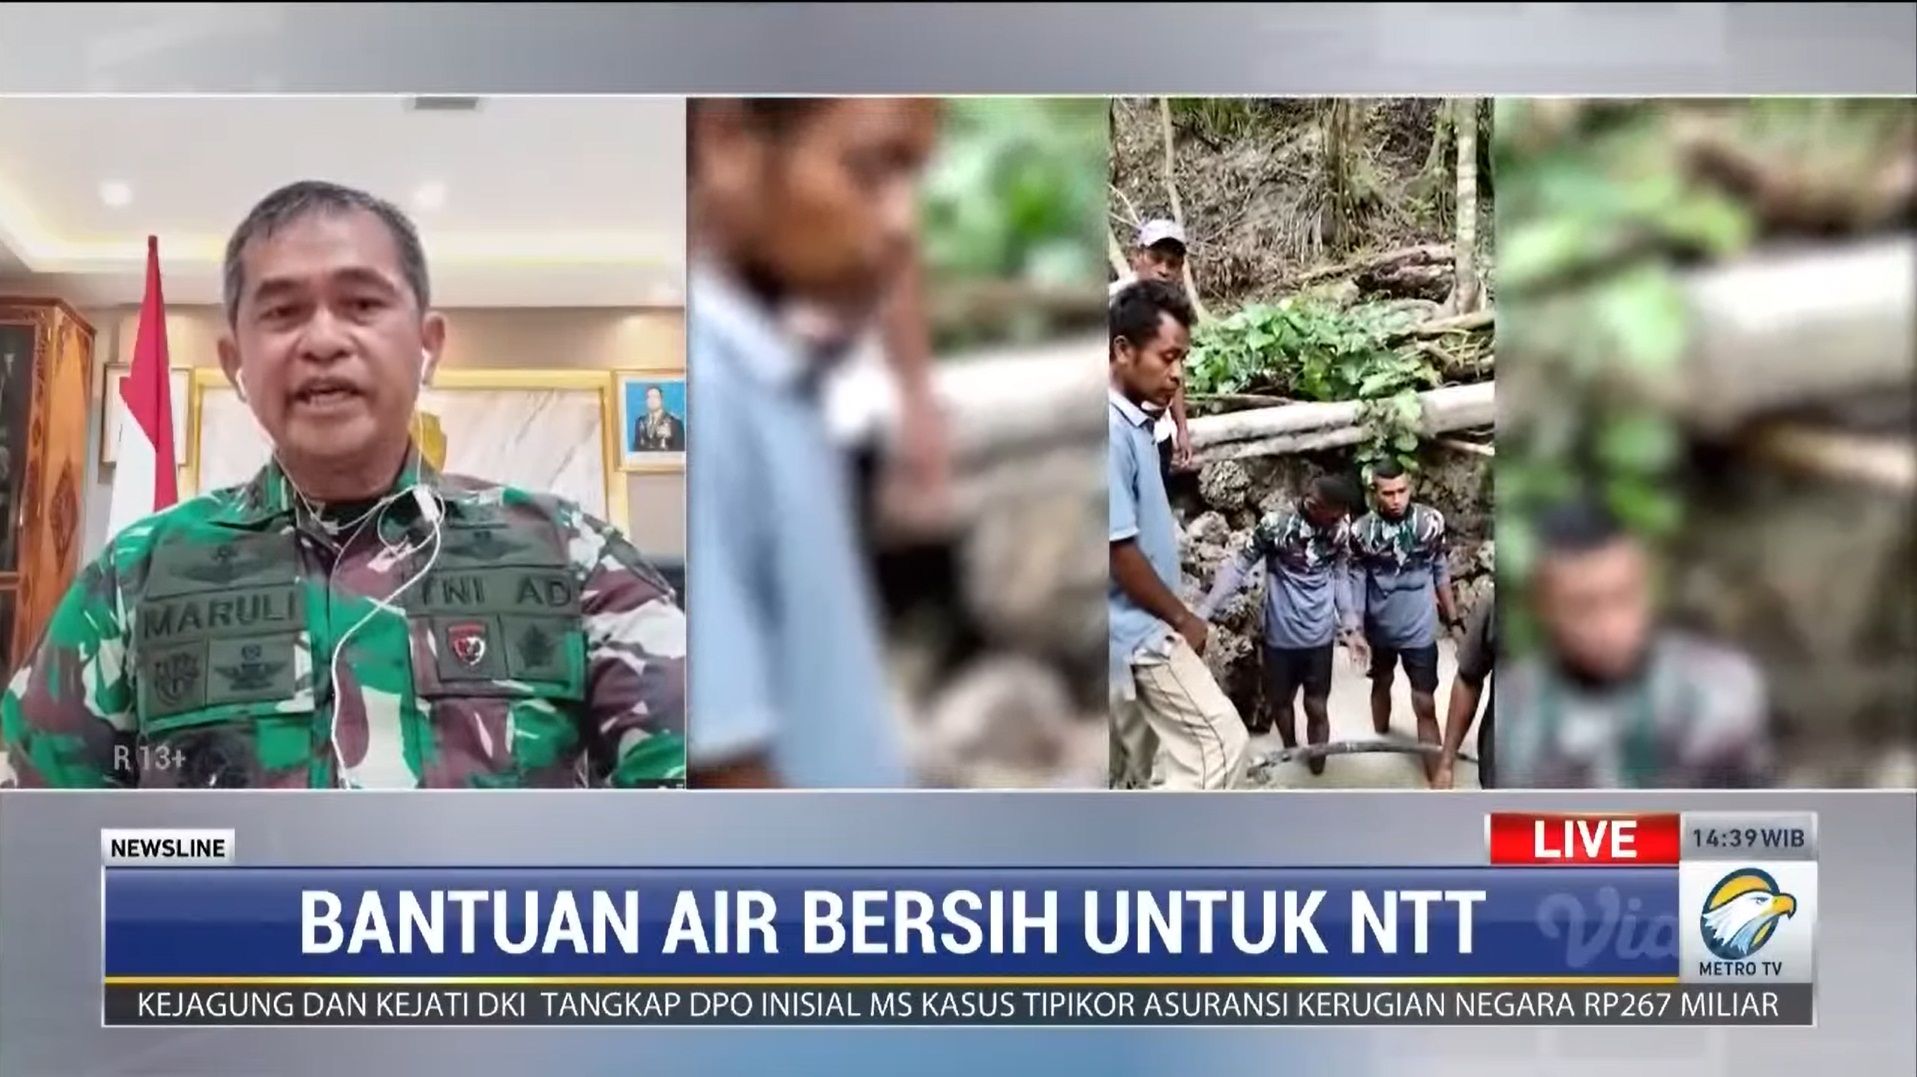 Mayor Jenderal TNI Maruli Simanjuntak, menjelaskan mengenai upaya Pangdam IX/ Udayana dan Shopee Indonesia untuk menuntaskan krisis air bersih di NTT